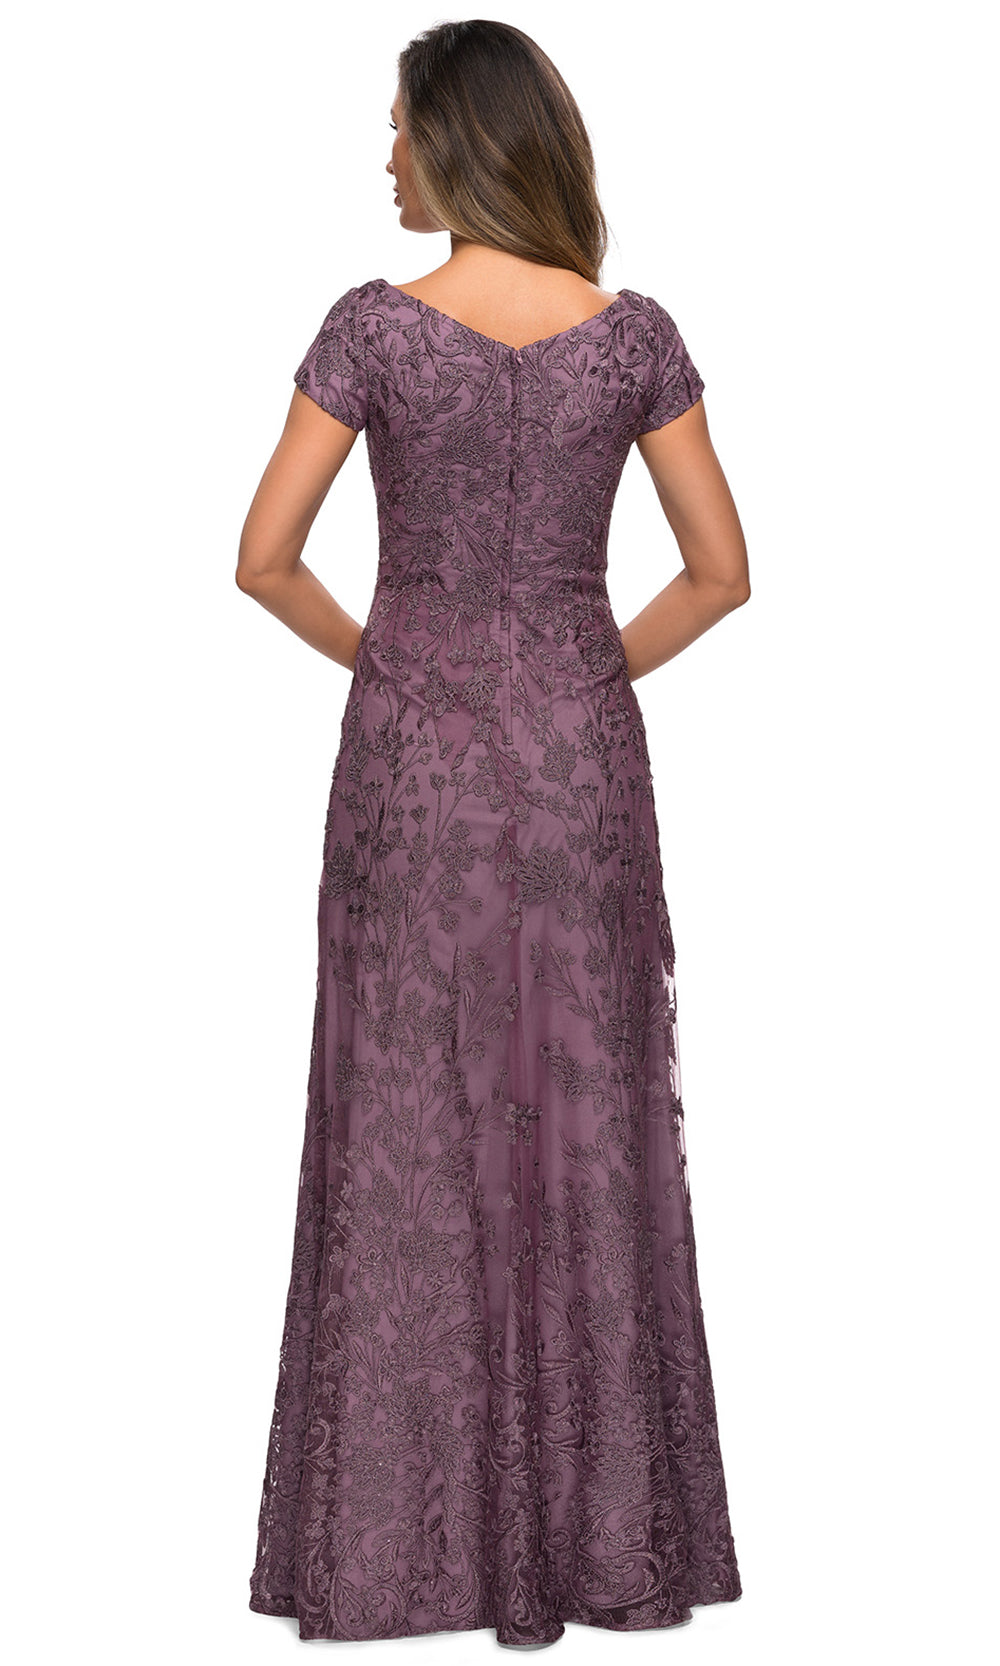 La Femme - 27915 Ornate Lace Short Sleeve Long Dress In Pink